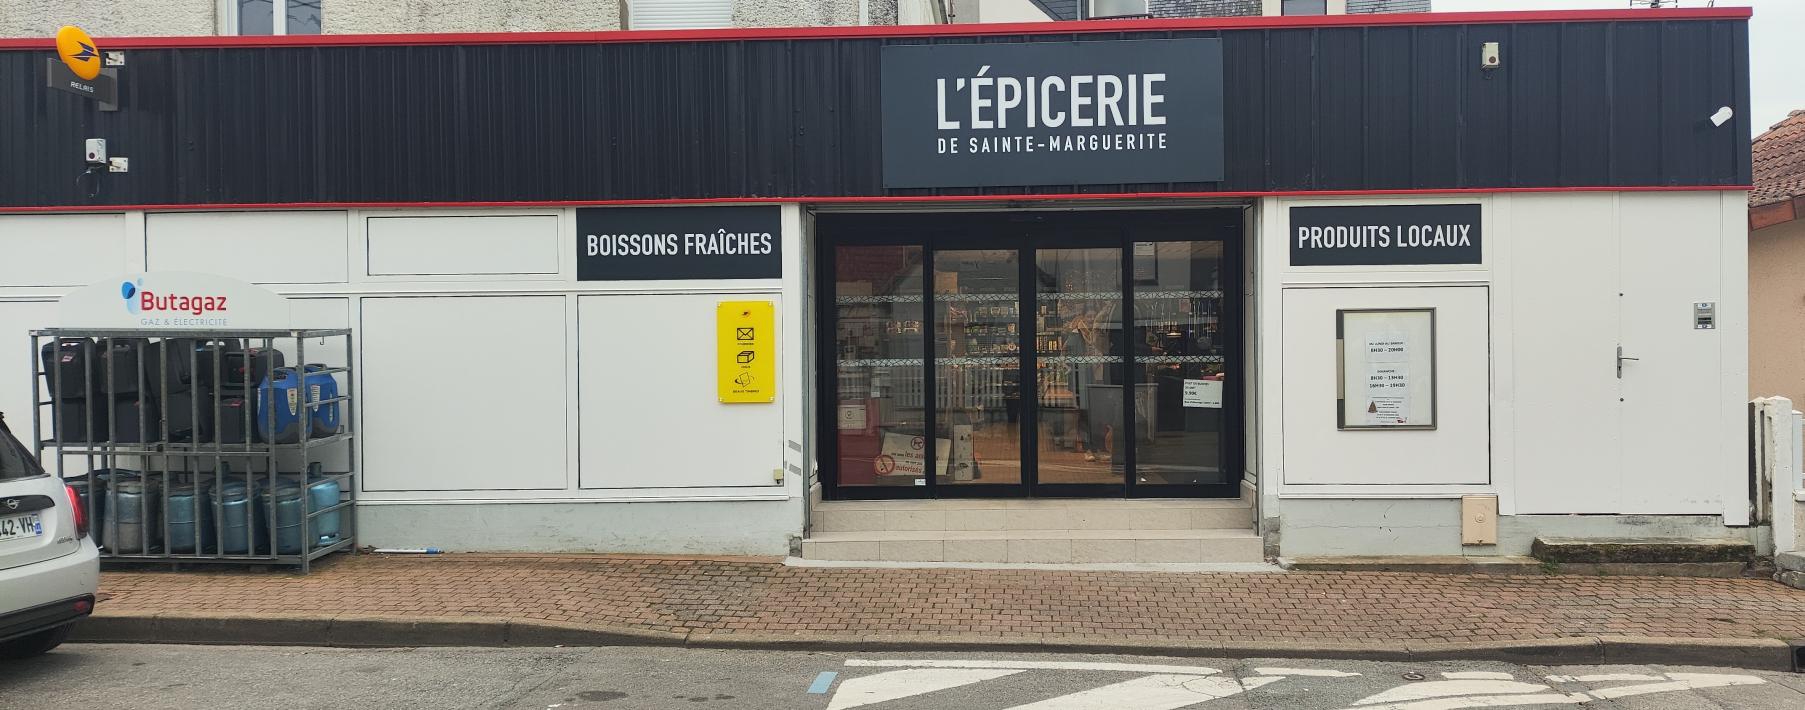 picerie-sainte-marguerite-devanture-magasin-4804581